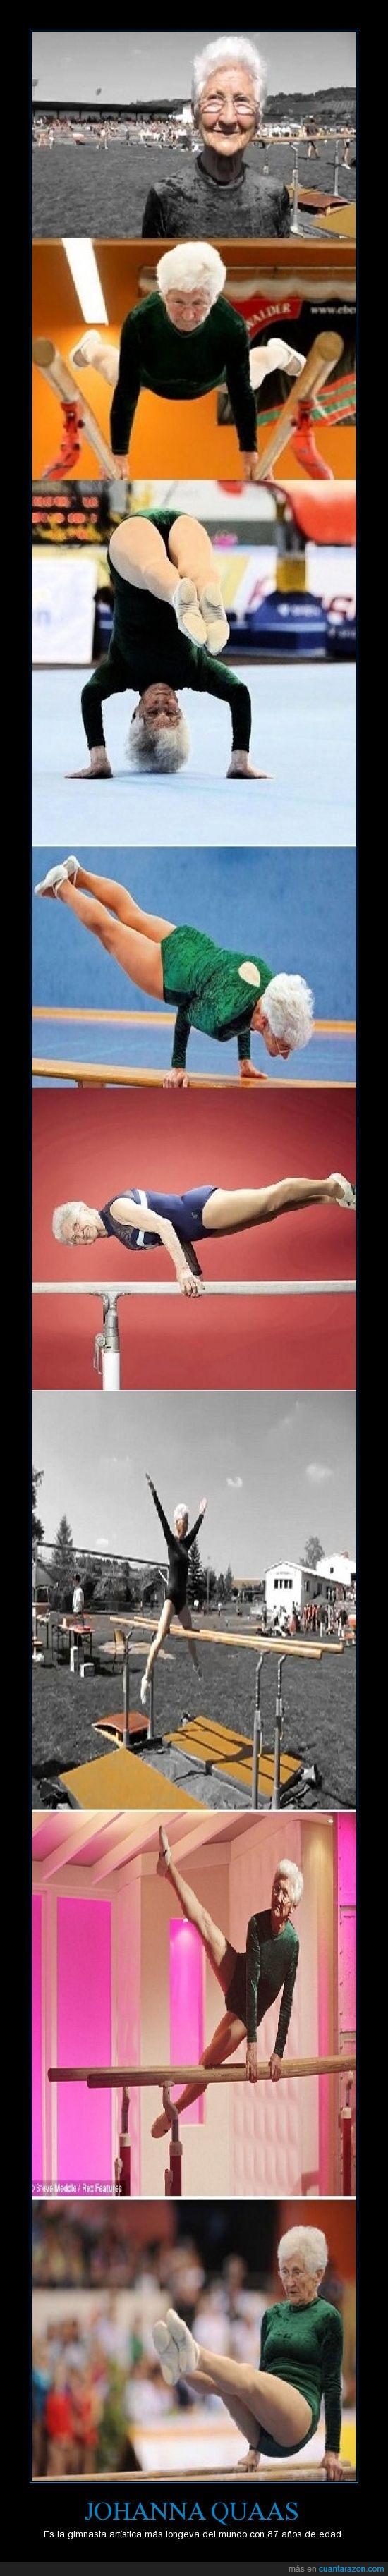 abuela,Johanna Quaas,Record Guinness,ejemplo de superación,gimnasta,éxito